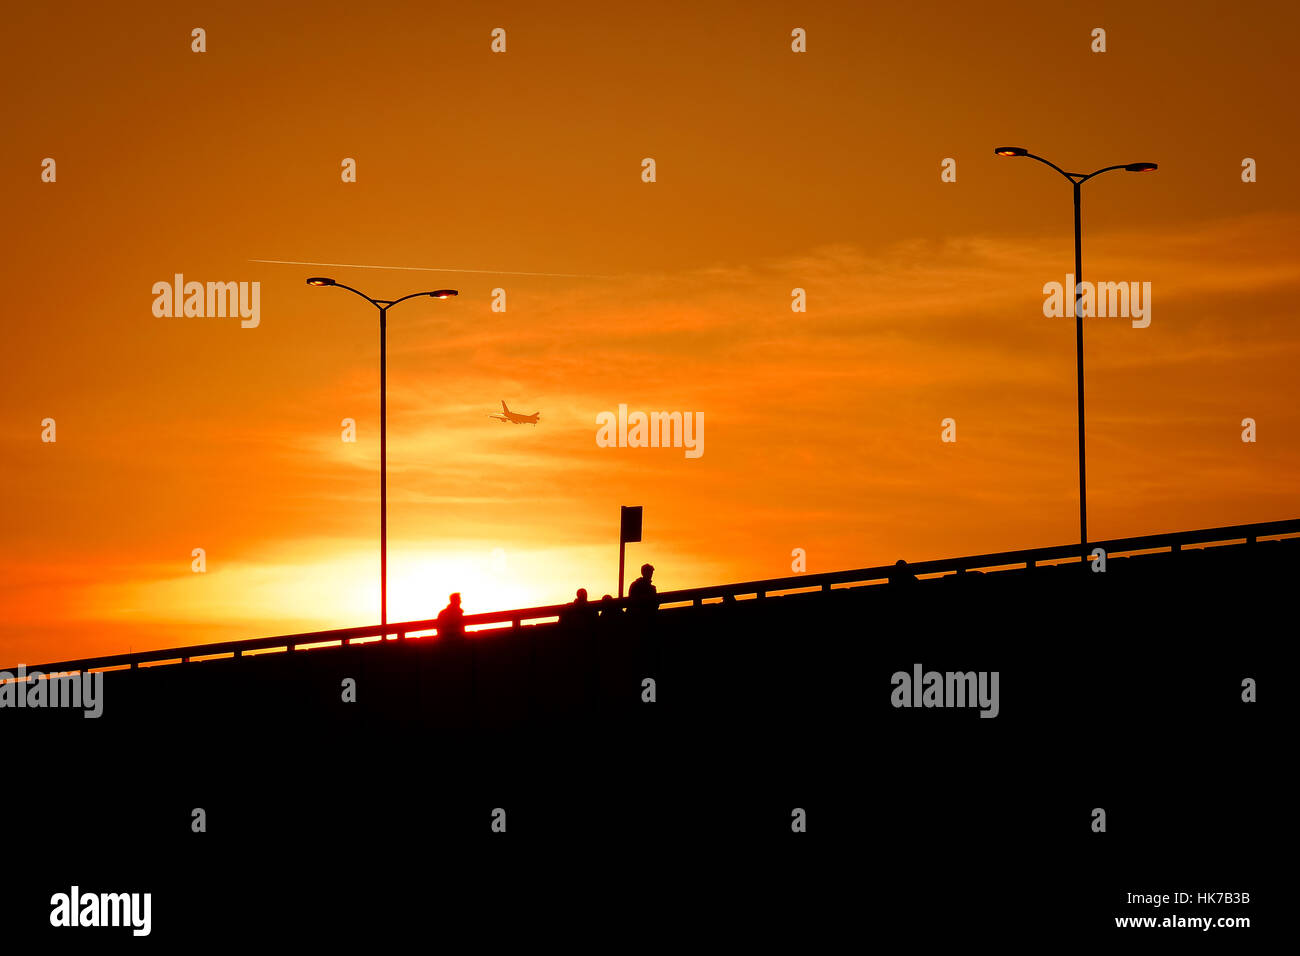 Pedestrians walk across a bridge at sunset Stock Photo